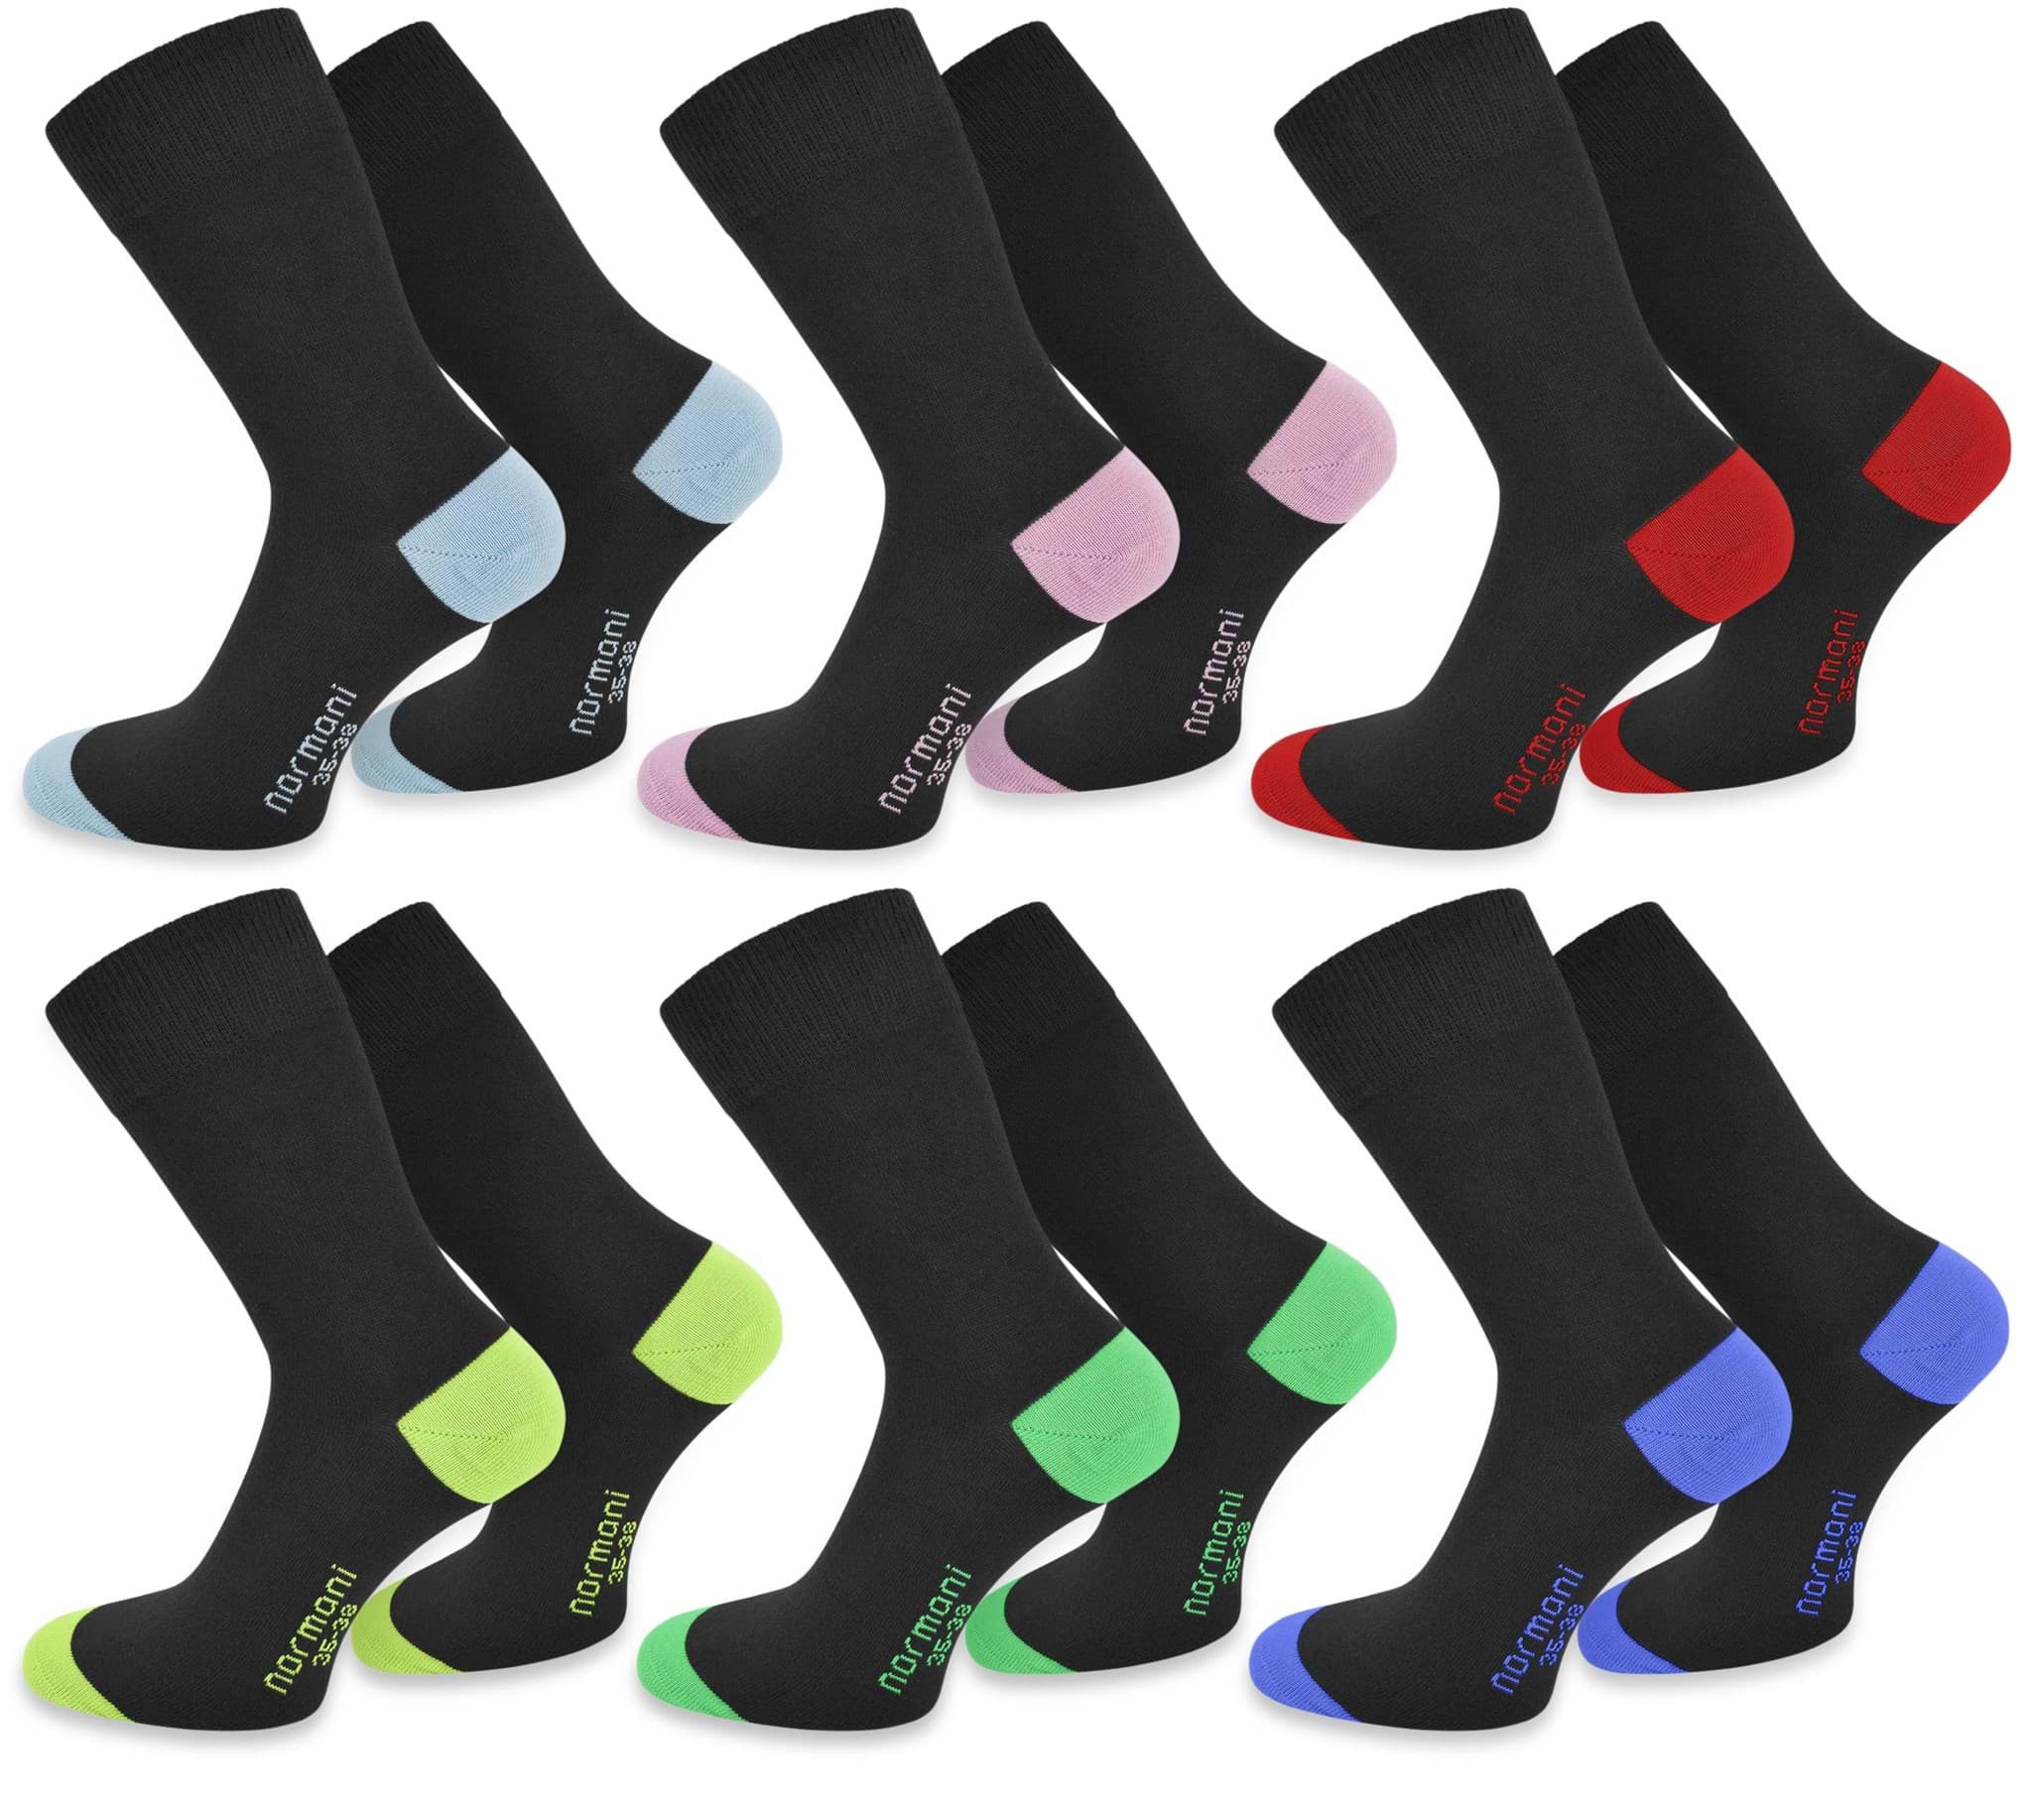 normani.de. 6 Paar Socken „New Style“